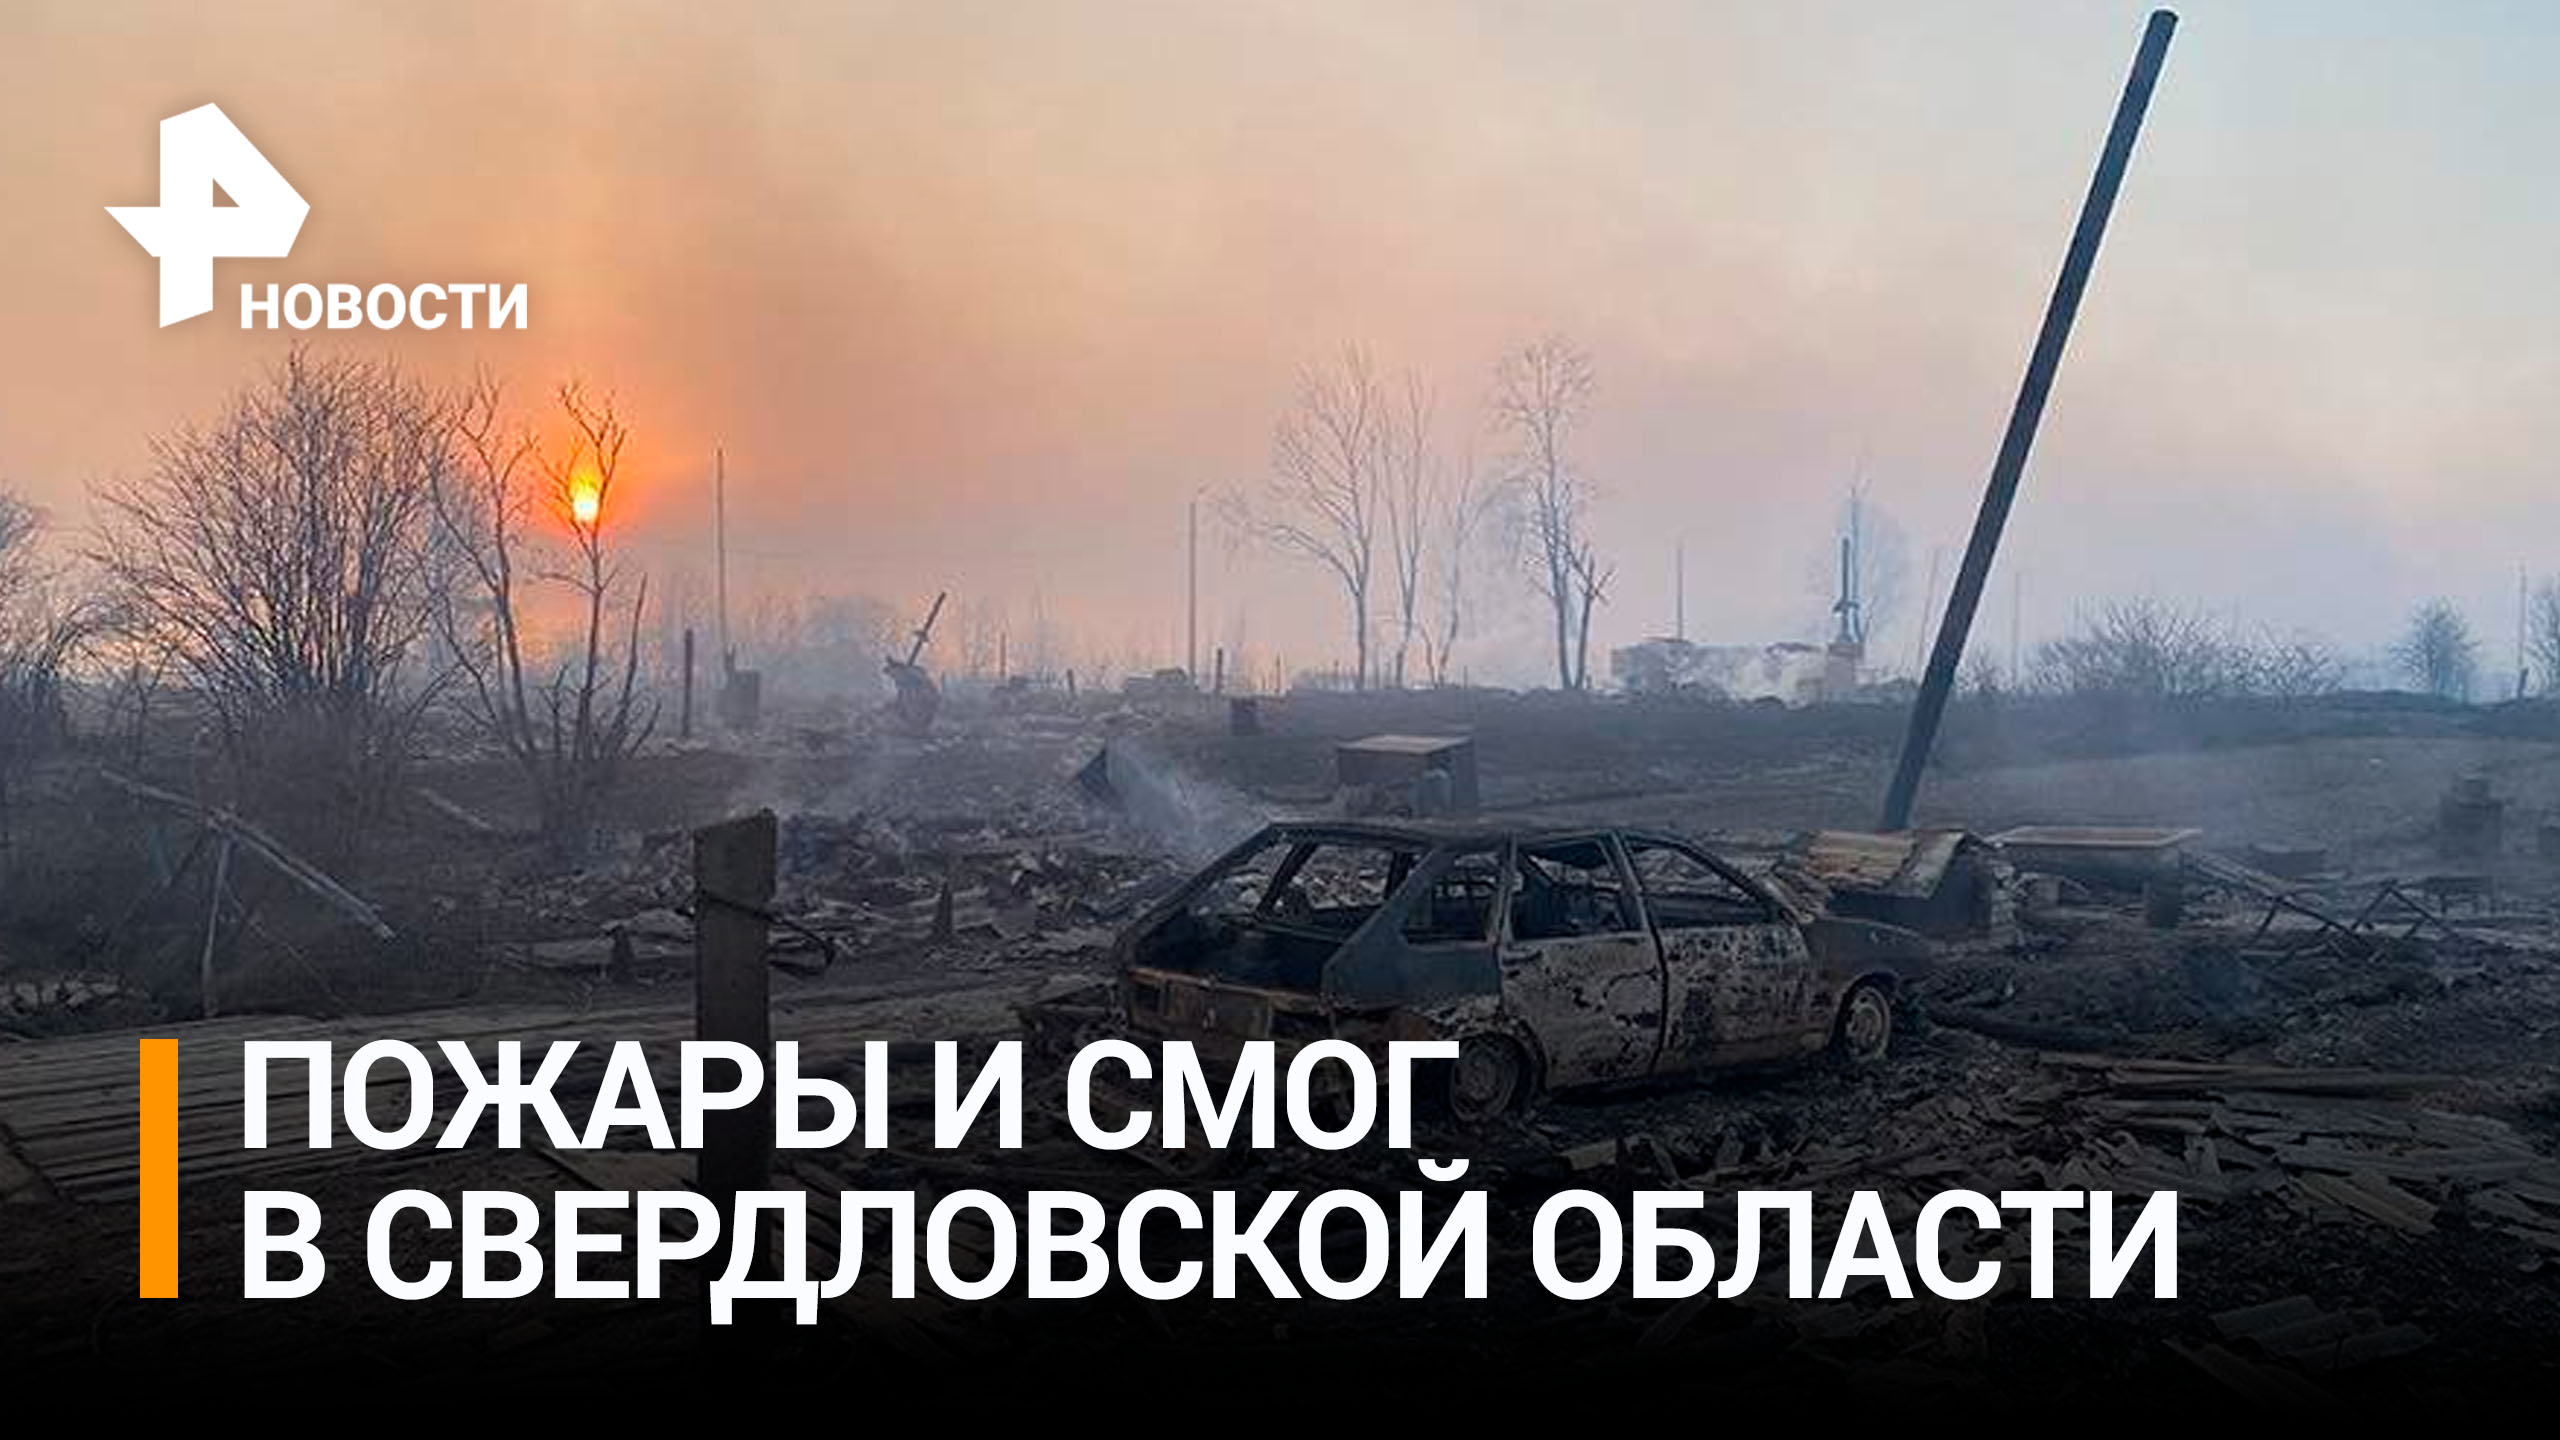 Екатеринбург утонул в густом смоге от лесных пожаров / РЕН Новости